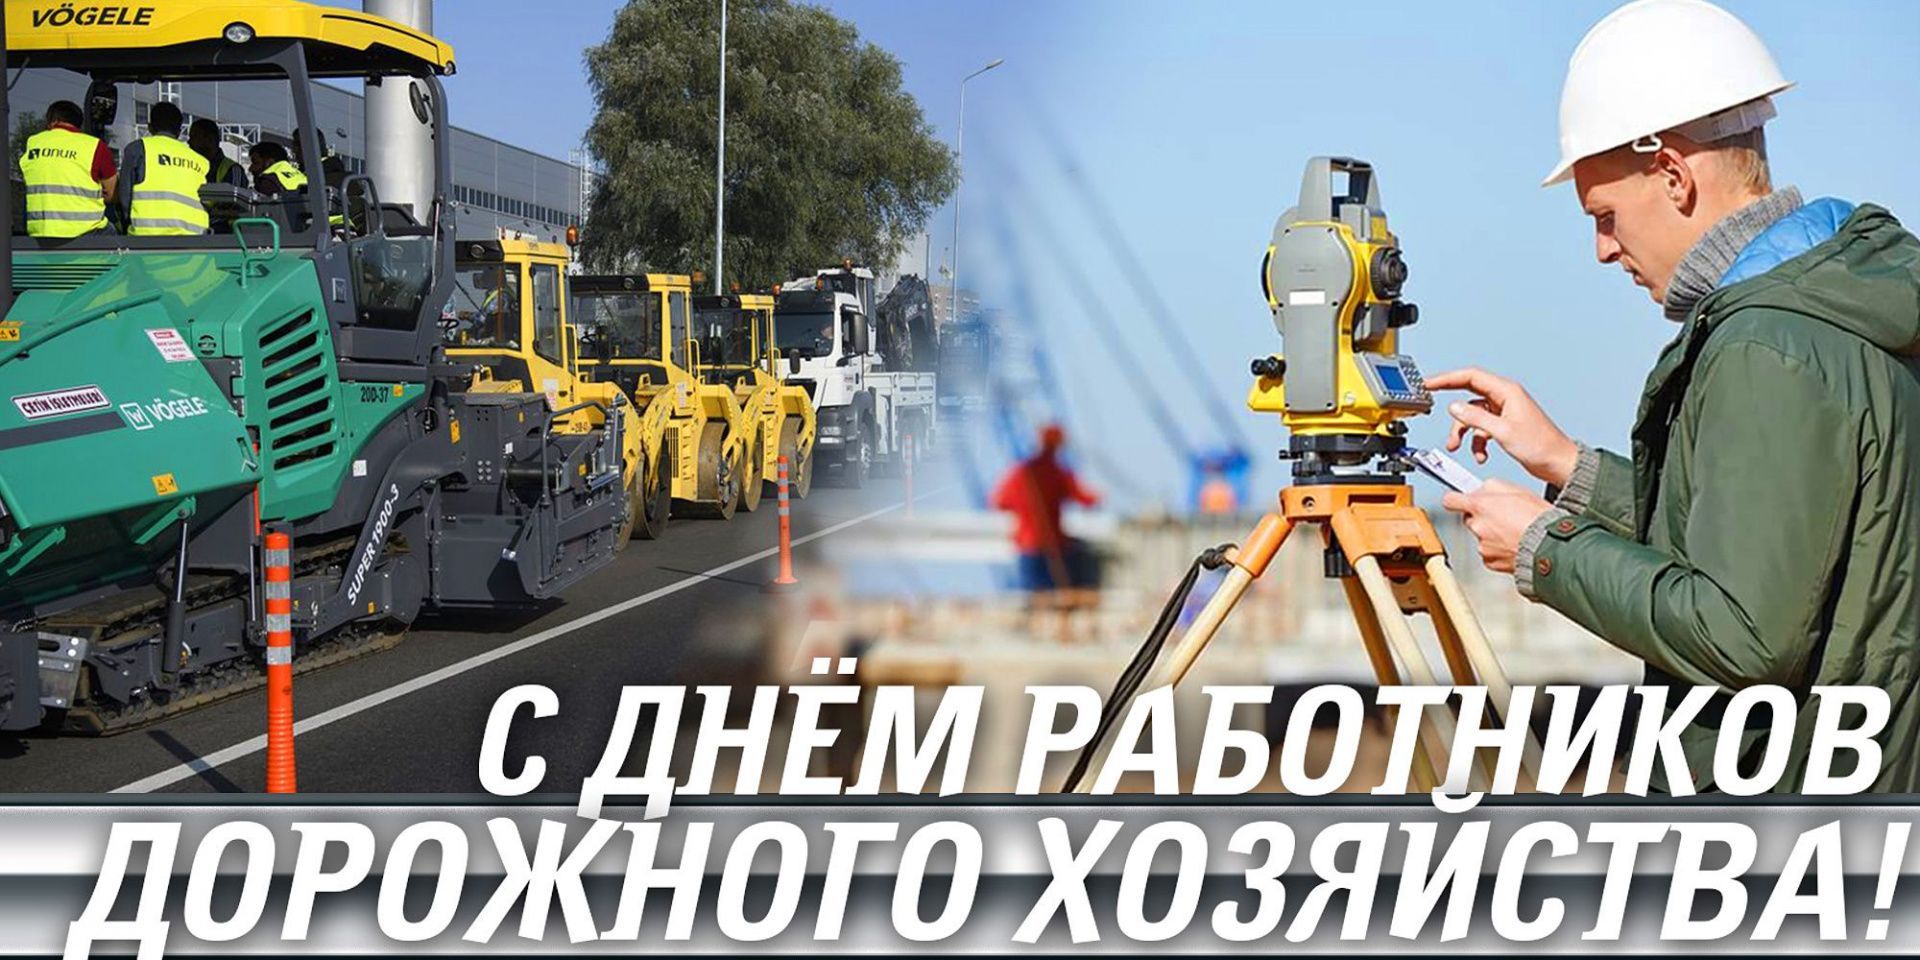 День работников дорожного хозяйства в России